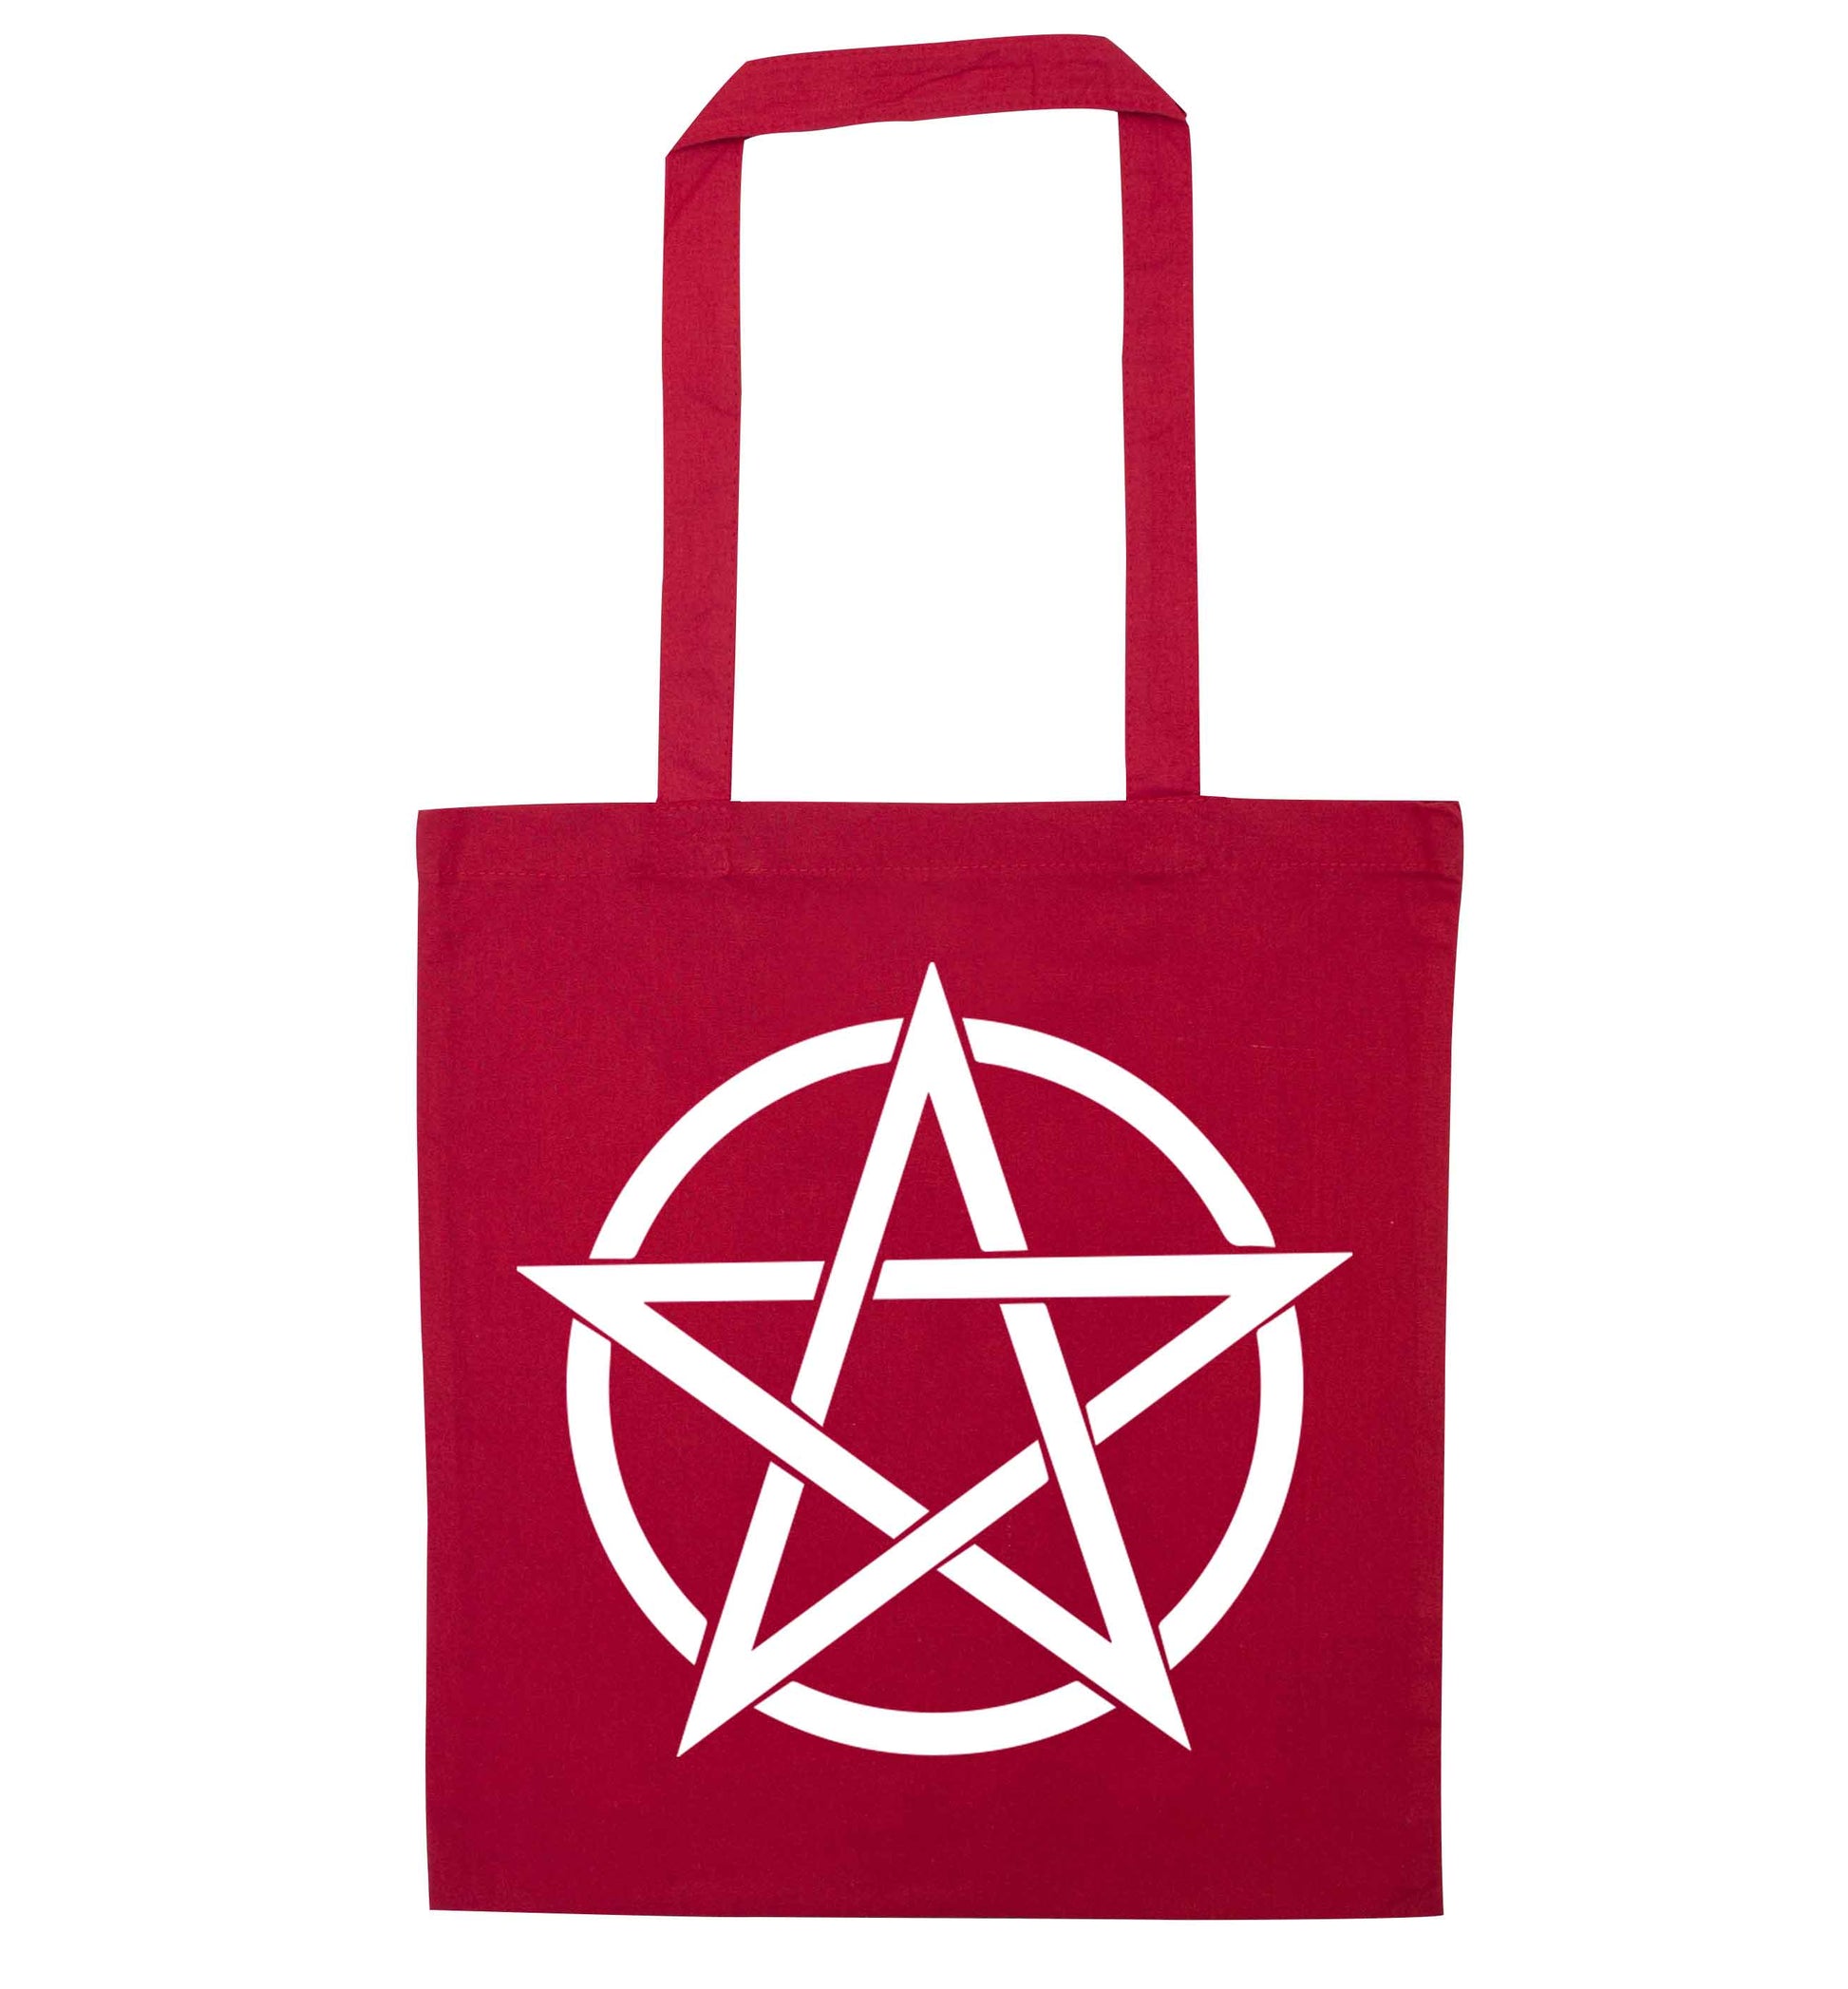 Pentagram symbol red tote bag